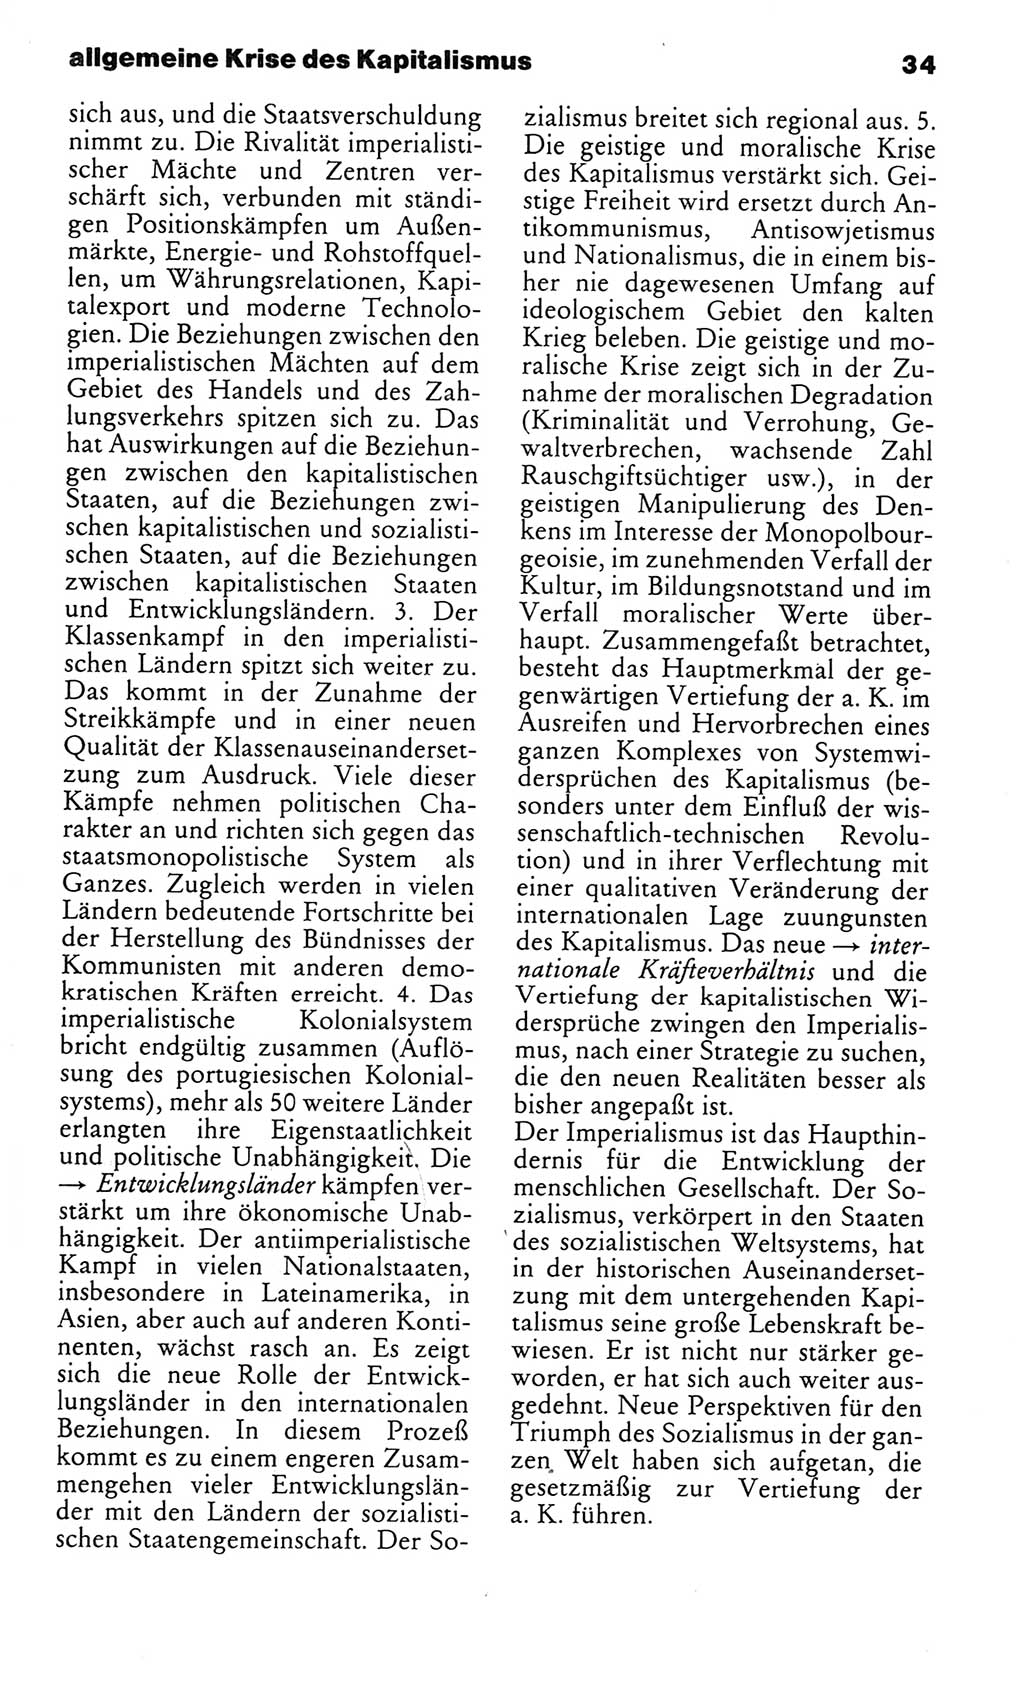 Kleines politisches Wörterbuch [Deutsche Demokratische Republik (DDR)] 1986, Seite 34 (Kl. pol. Wb. DDR 1986, S. 34)